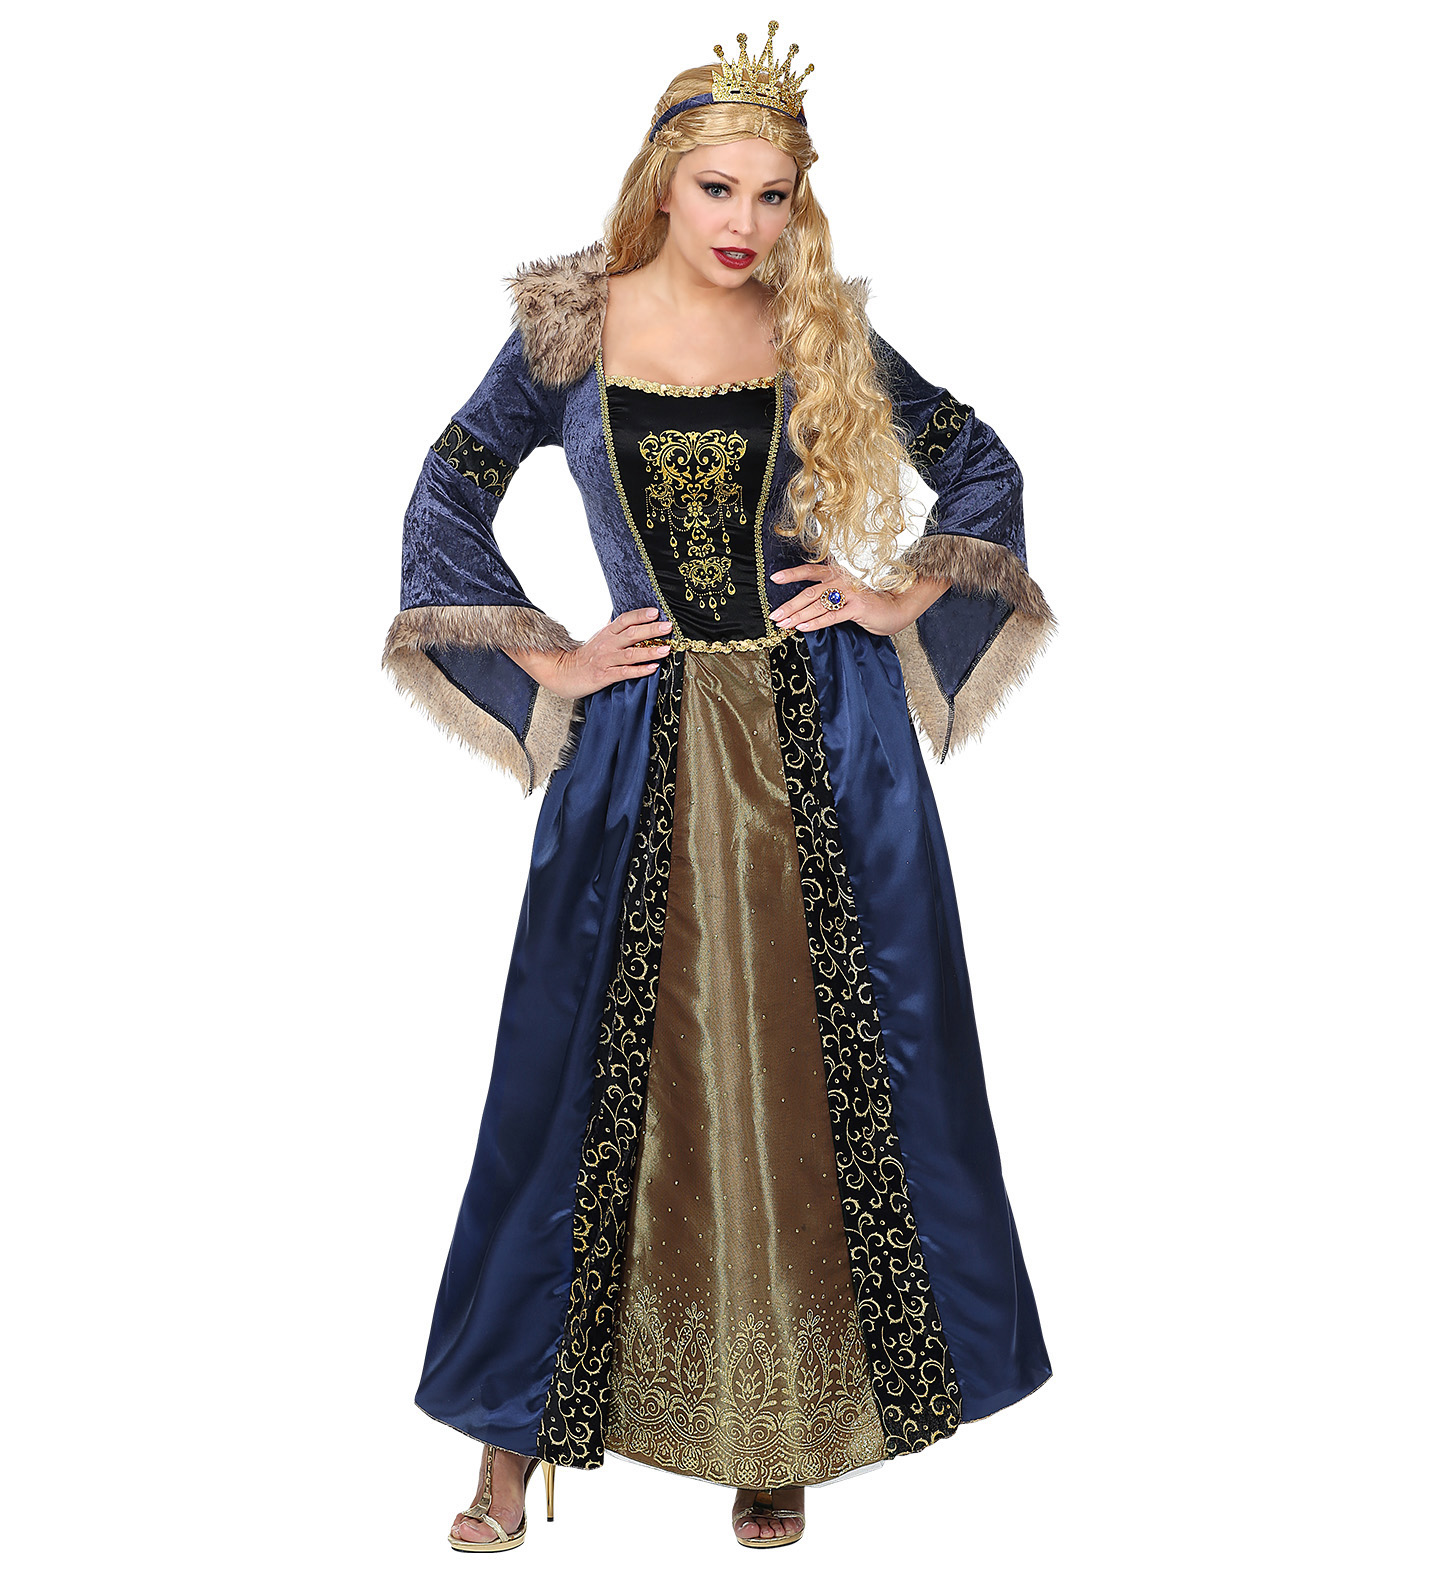 Costum regina medievala adult premium marimea xl